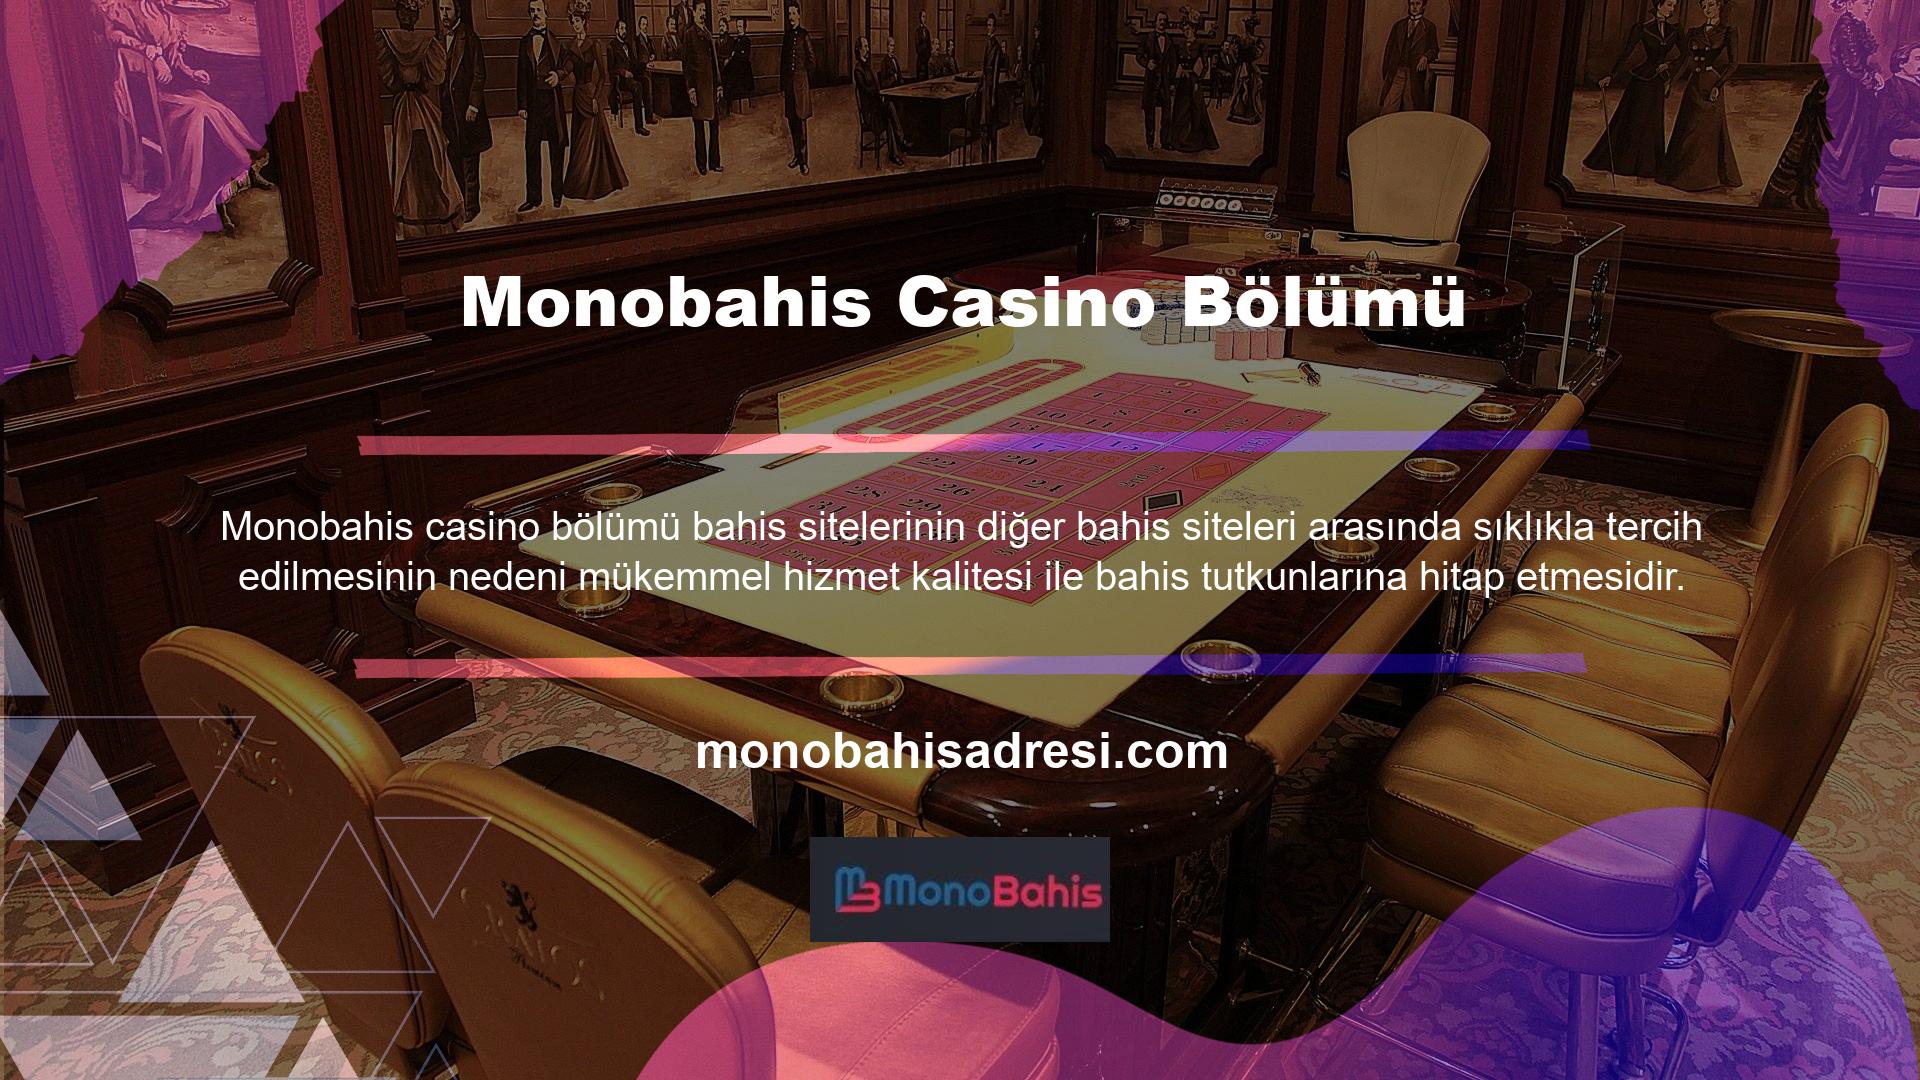 Mevcut adresiniz bahis sitesinin casino bölümünde ise çeşitli sağlayıcılar üzerinden birçok oyuna çok kolay bir şekilde erişim sağlayabilirsiniz